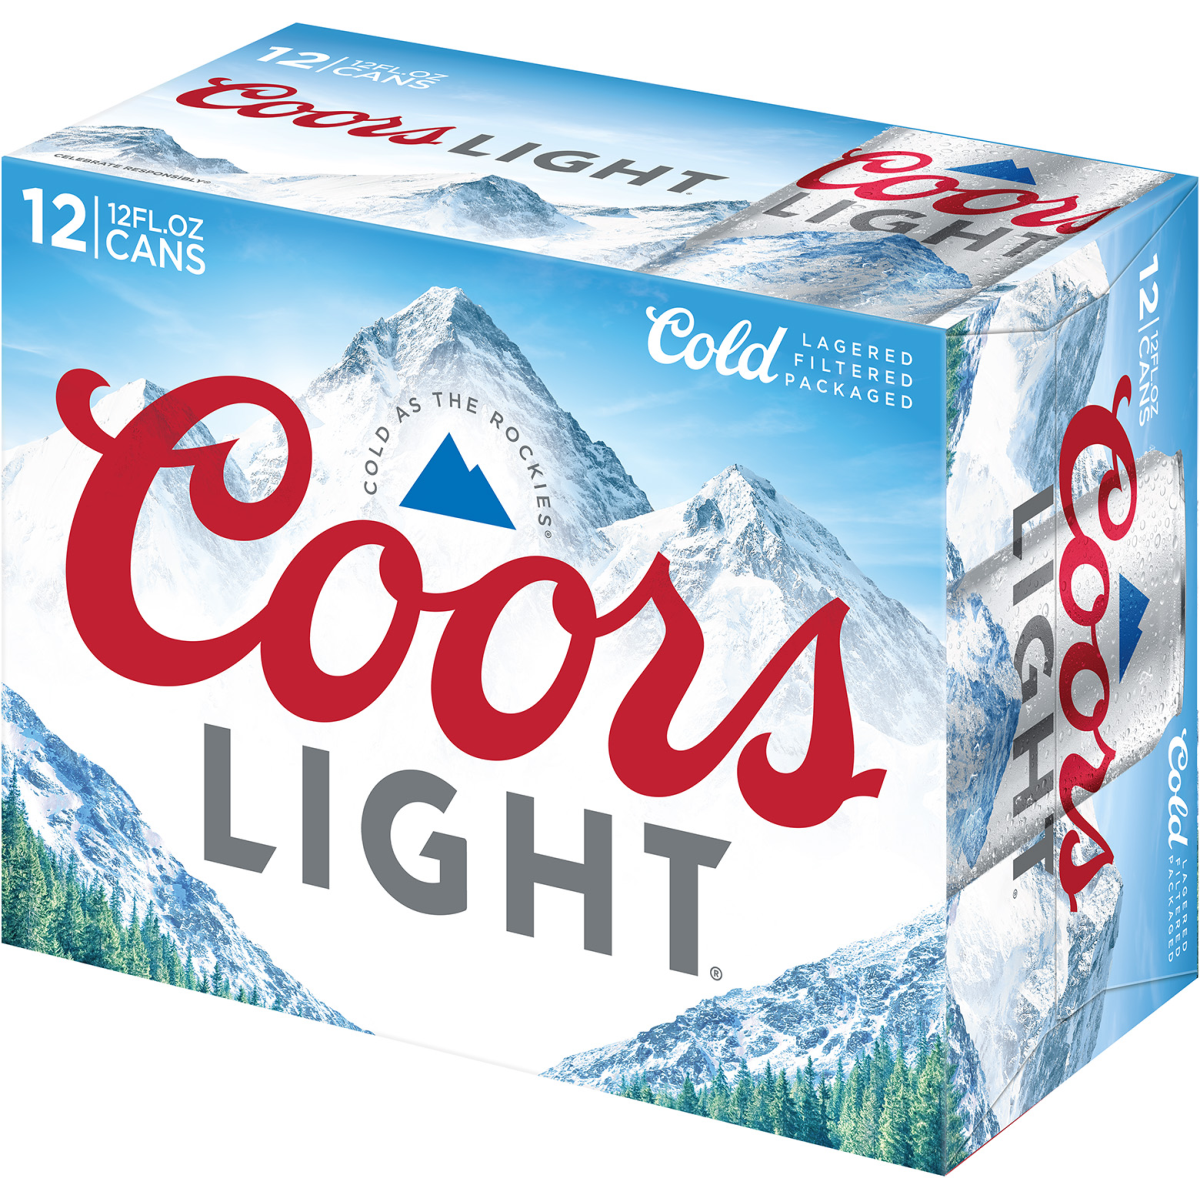 Coors Light Finley Beer